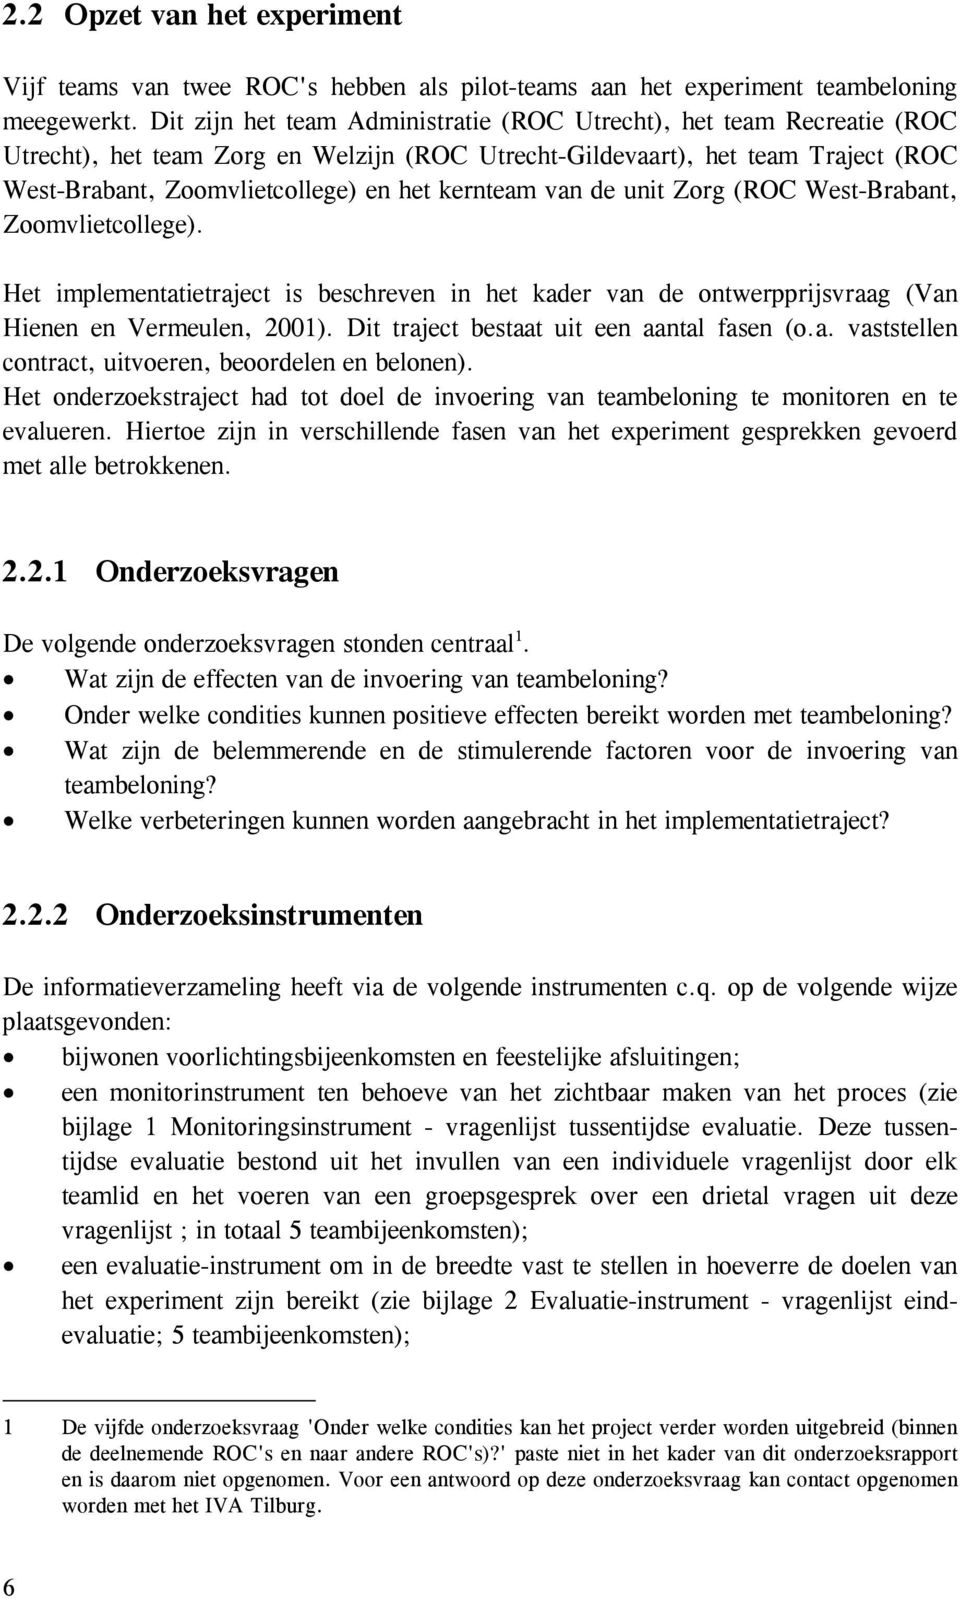 kernteam van de unit Zorg (ROC West-Brabant, Zoomvlietcollege). Het implementatietraject is beschreven in het kader van de ontwerpprijsvraag (Van Hienen en Vermeulen, 2001).